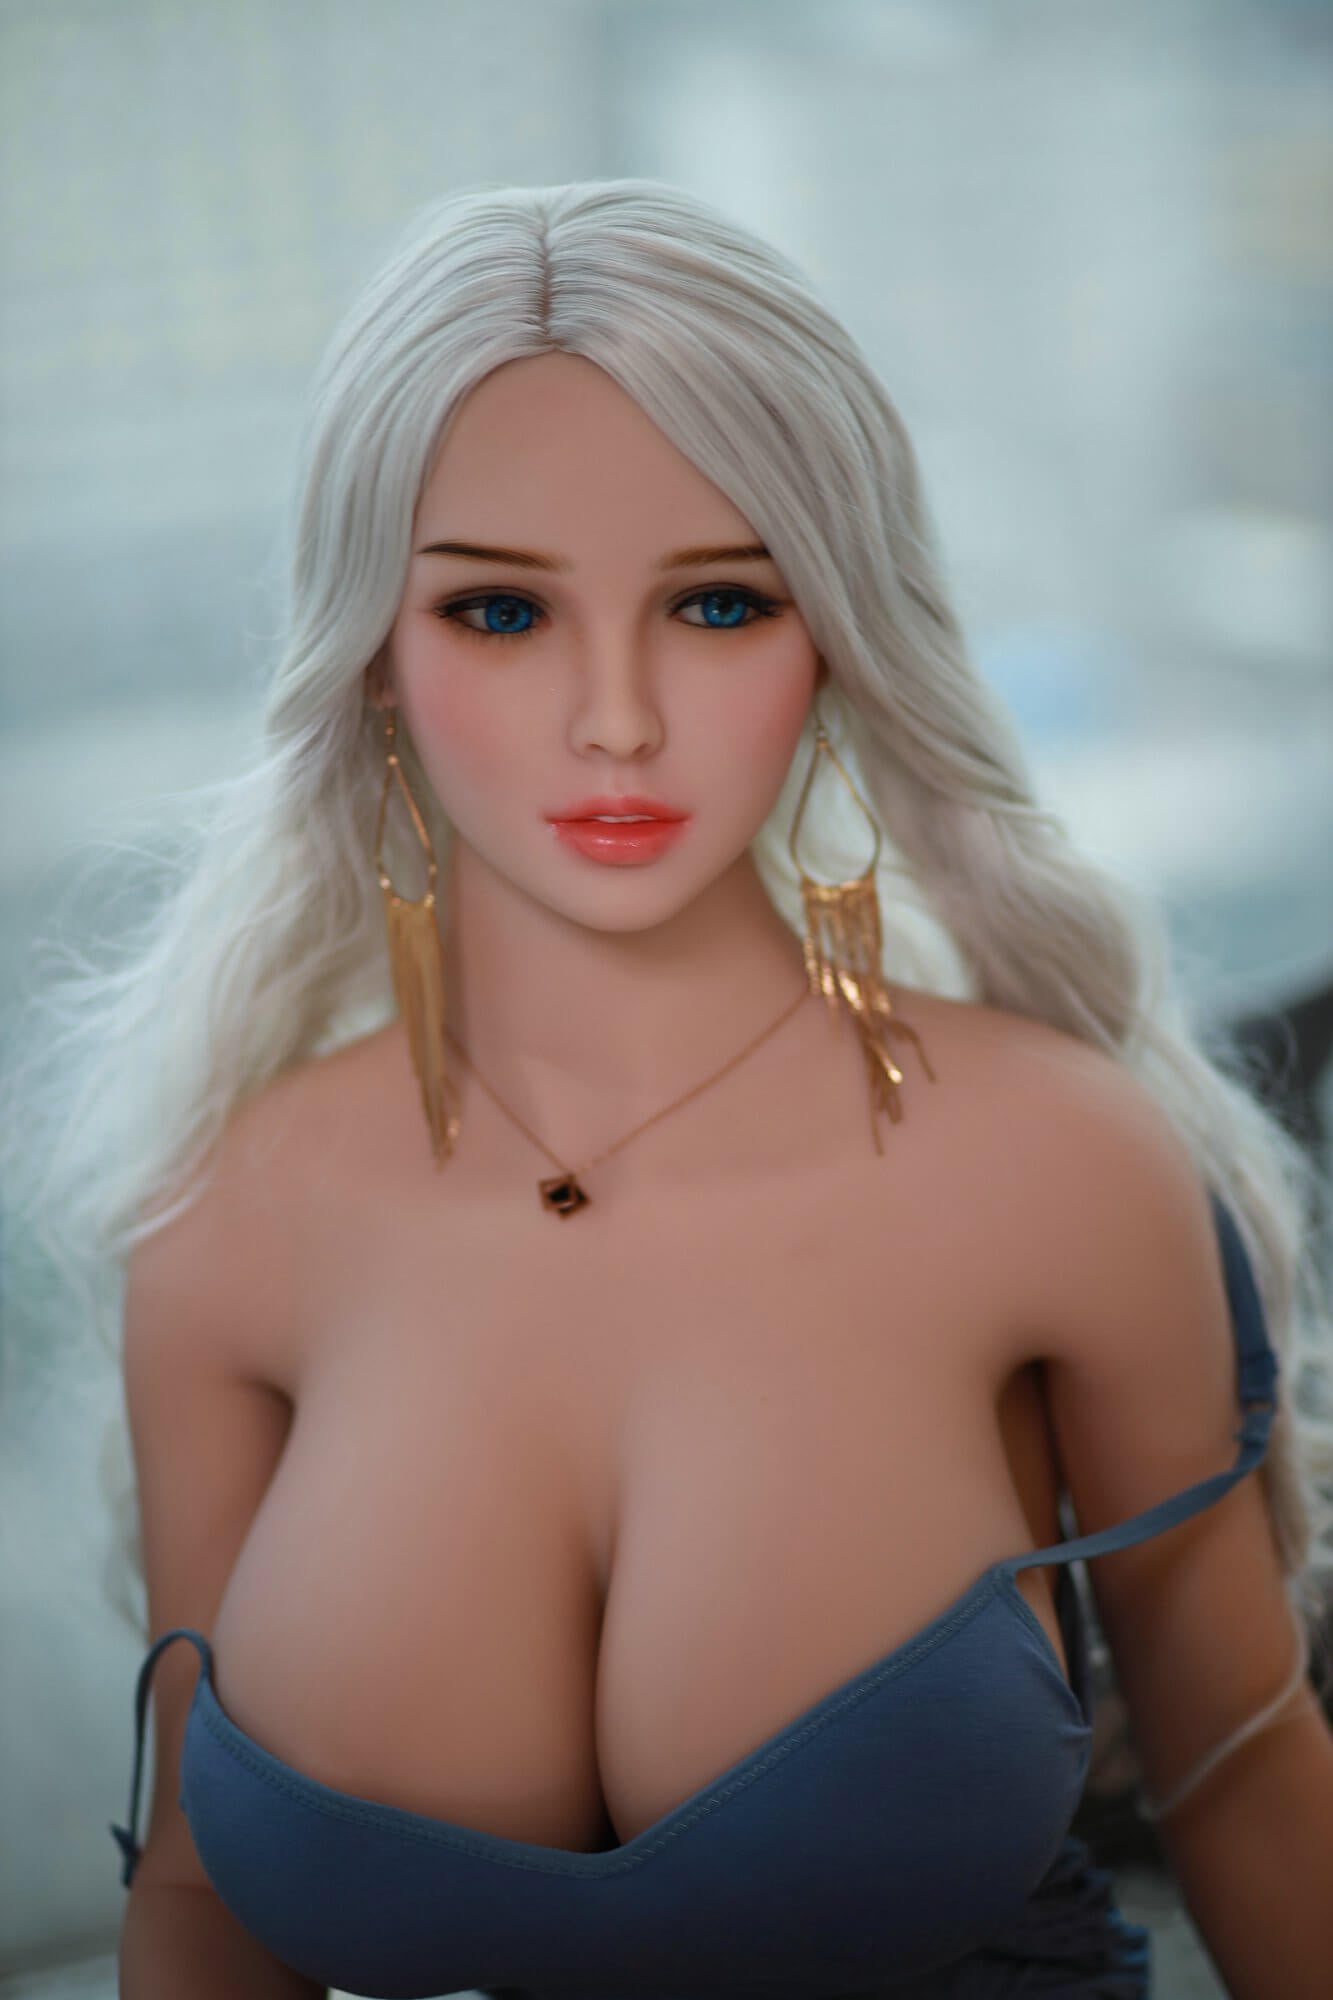 Melanie - Big Breast Sex Doll - 5ft 7in (170cm) - Love Dolls 4U